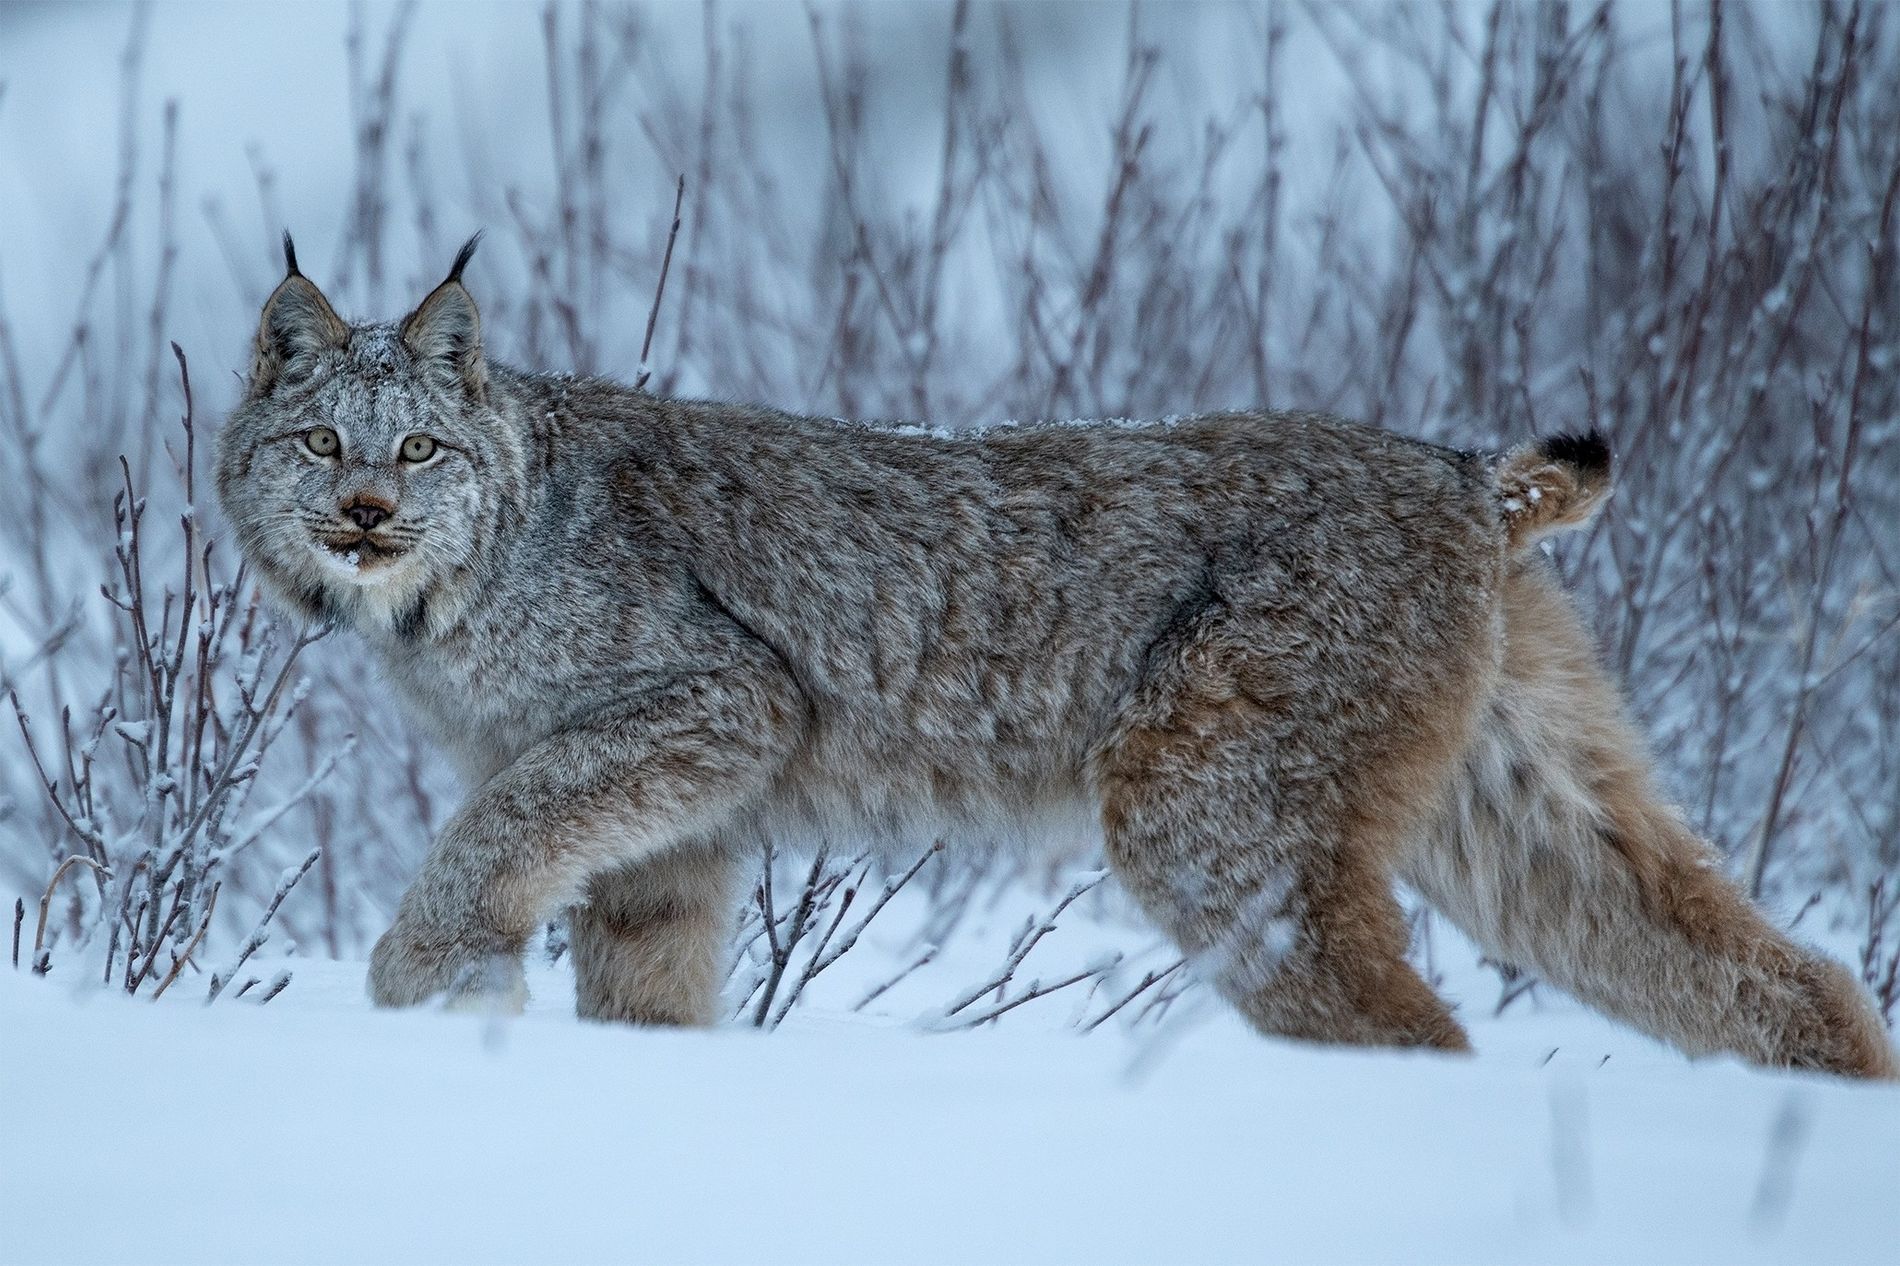 Meet the Canadian Lynx